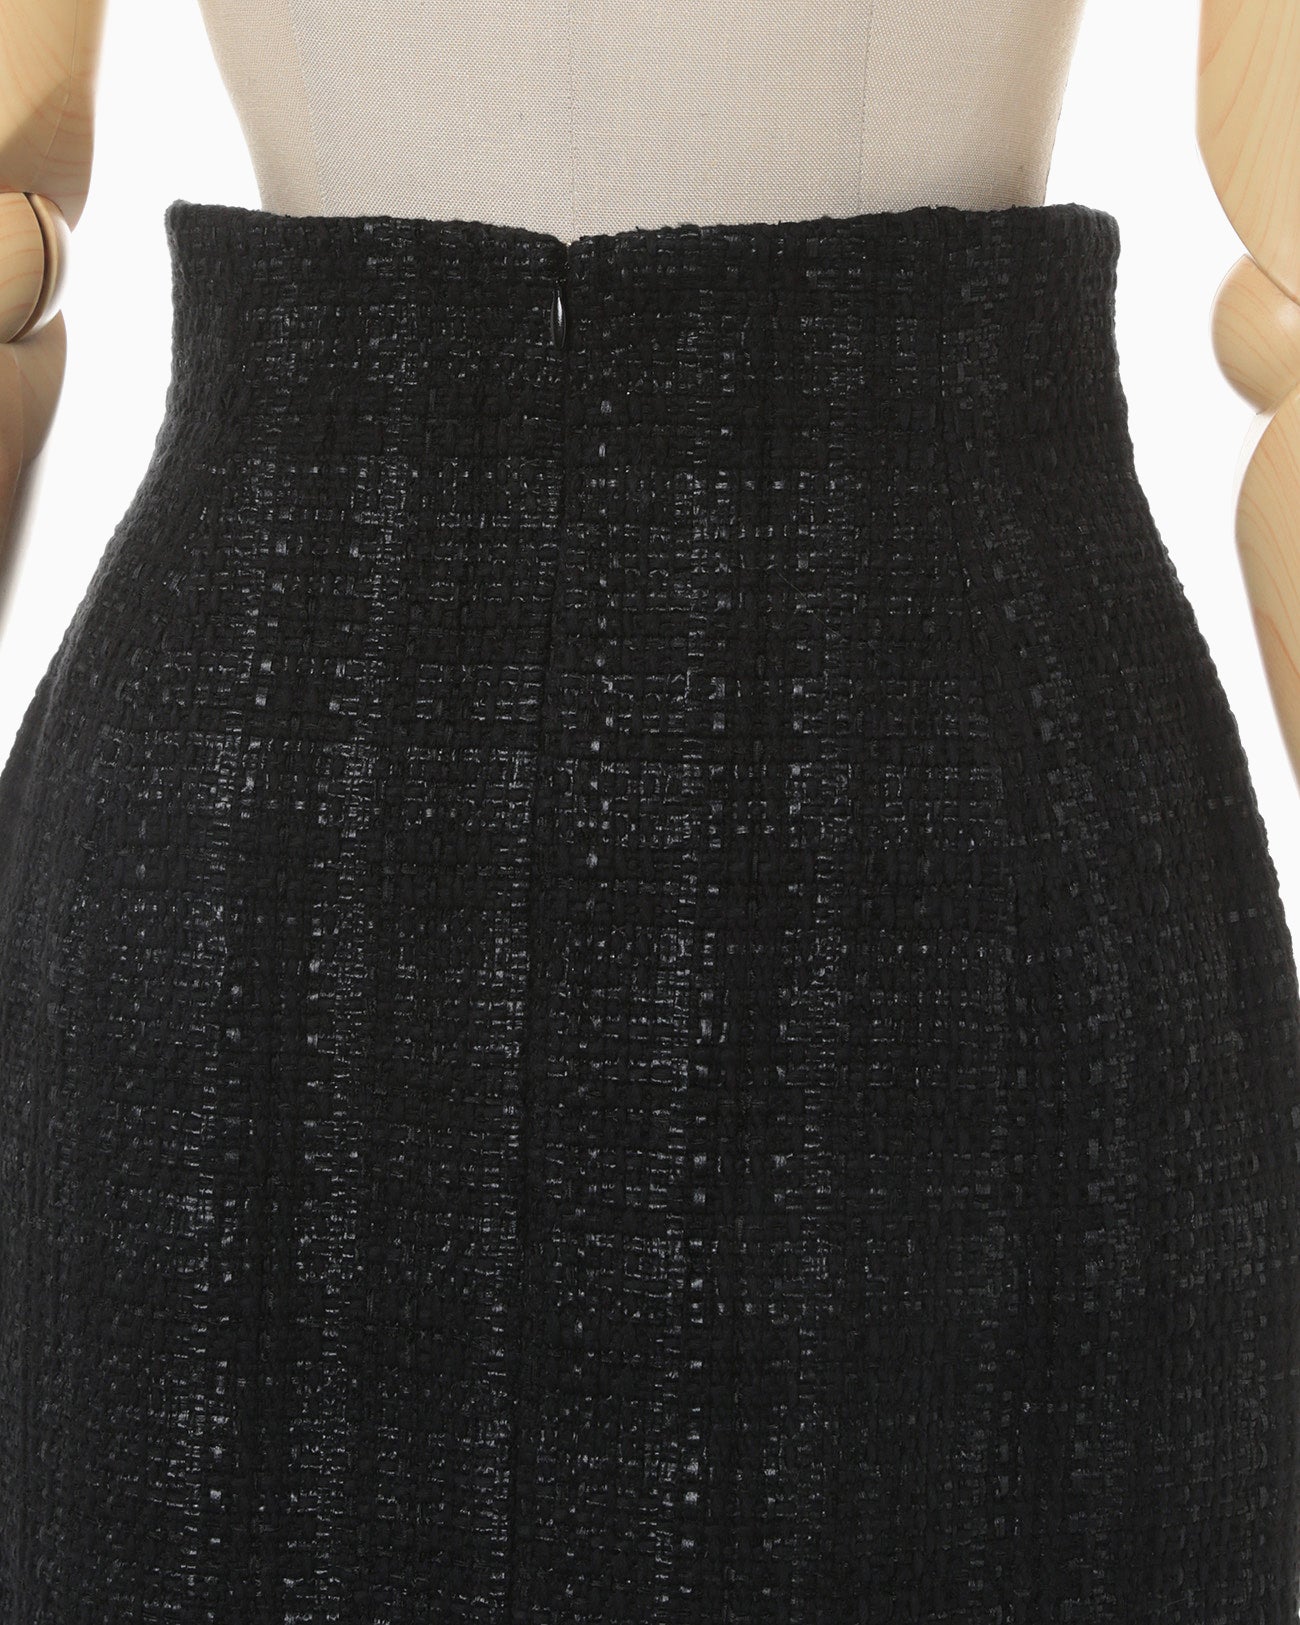 Cracted Tweed Skirt - black